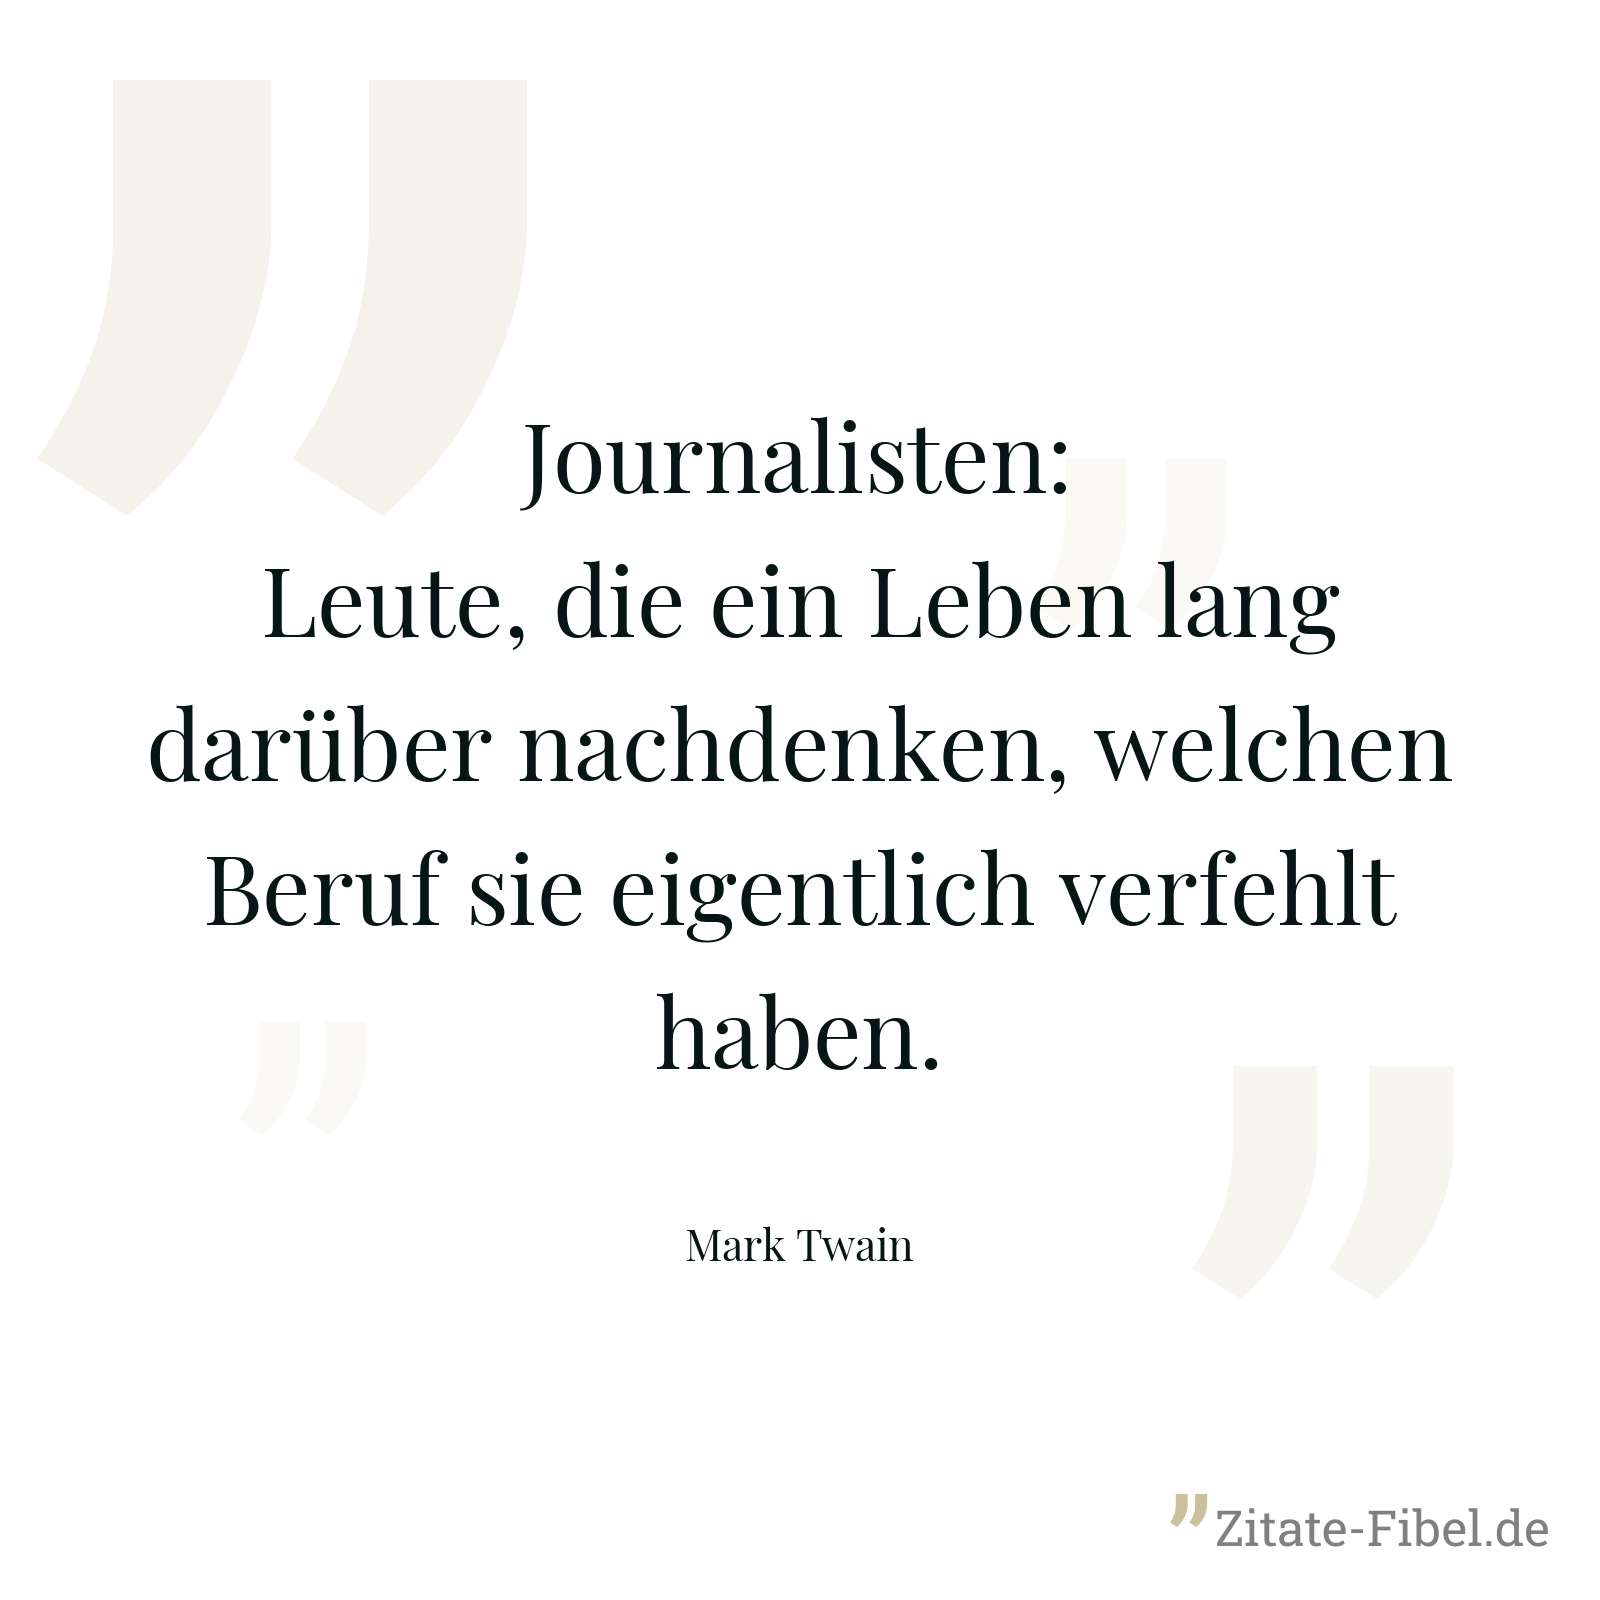 Journalisten: Leute, die ein Leben lang darüber nachdenken, welchen Beruf sie eigentlich verfehlt haben. - Mark Twain